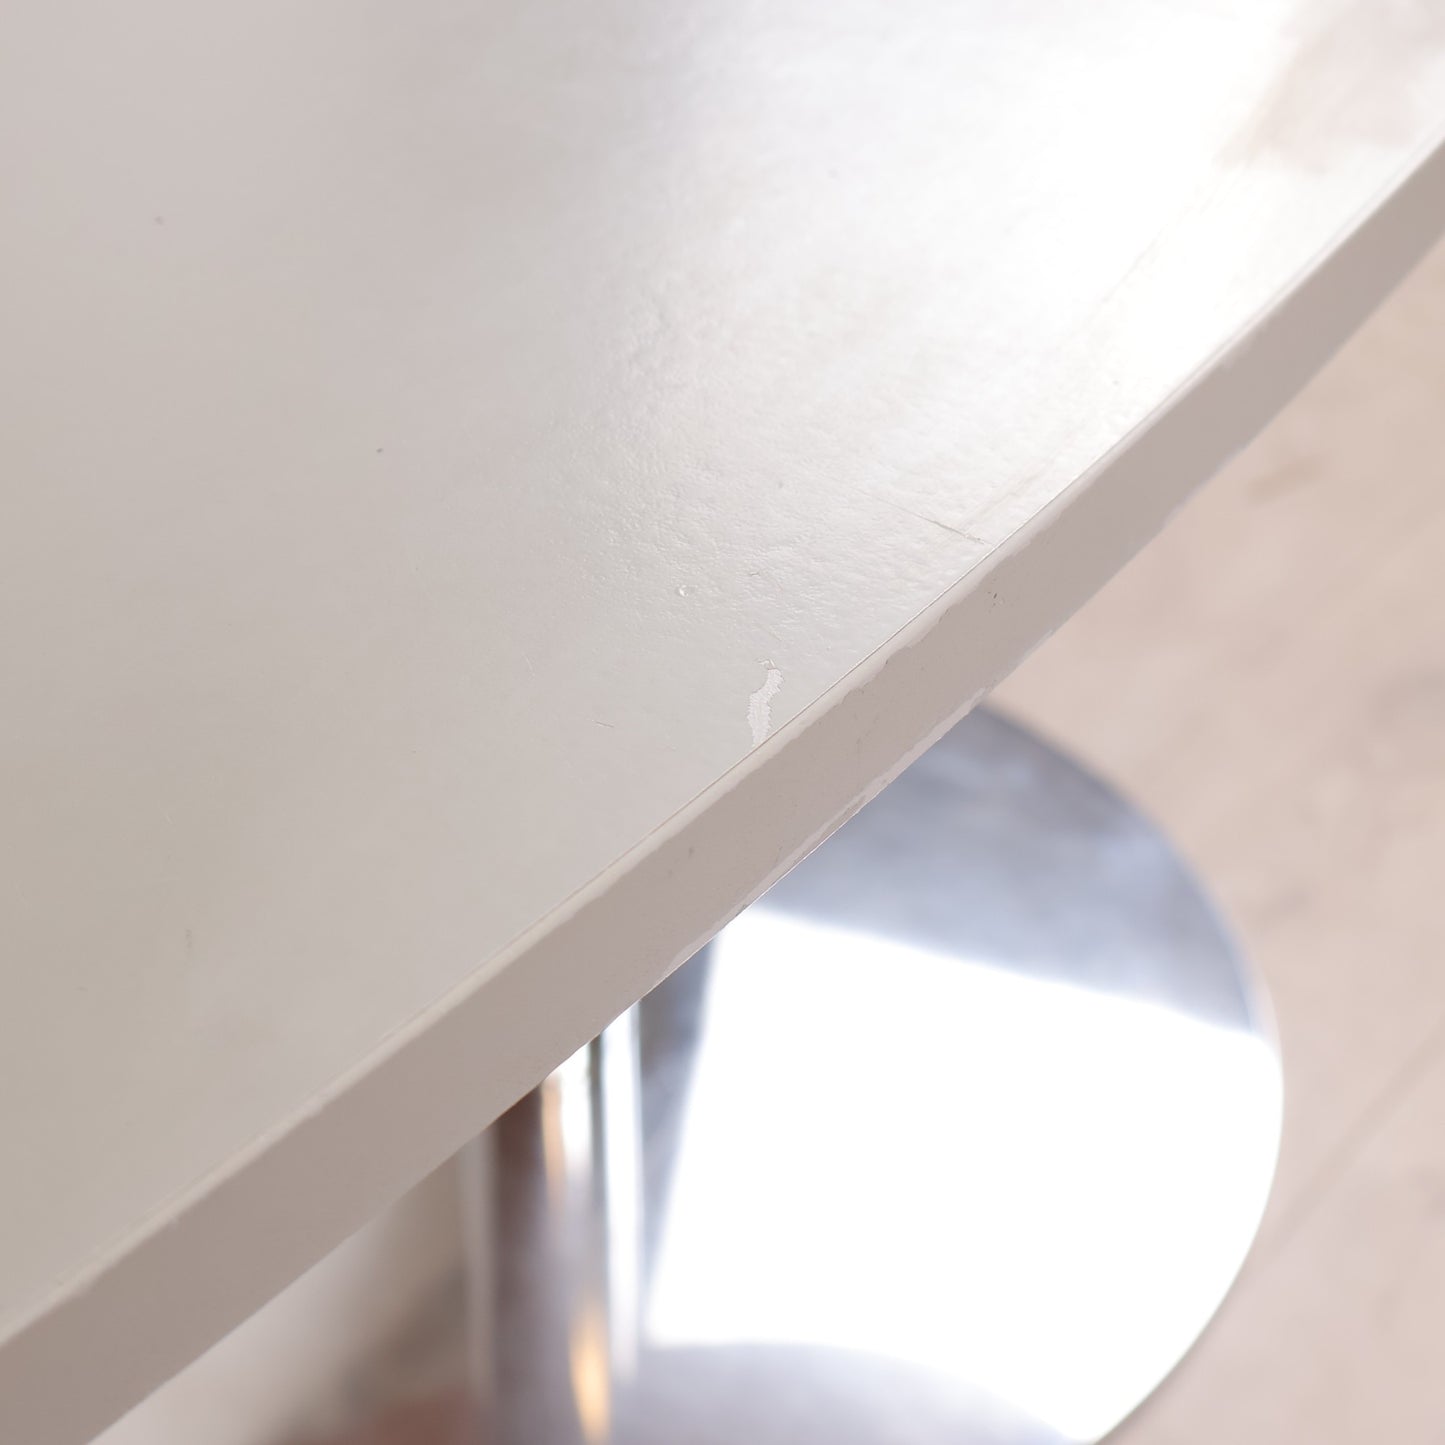 Ovalt møtebord, grå/krom. 200x100 cm